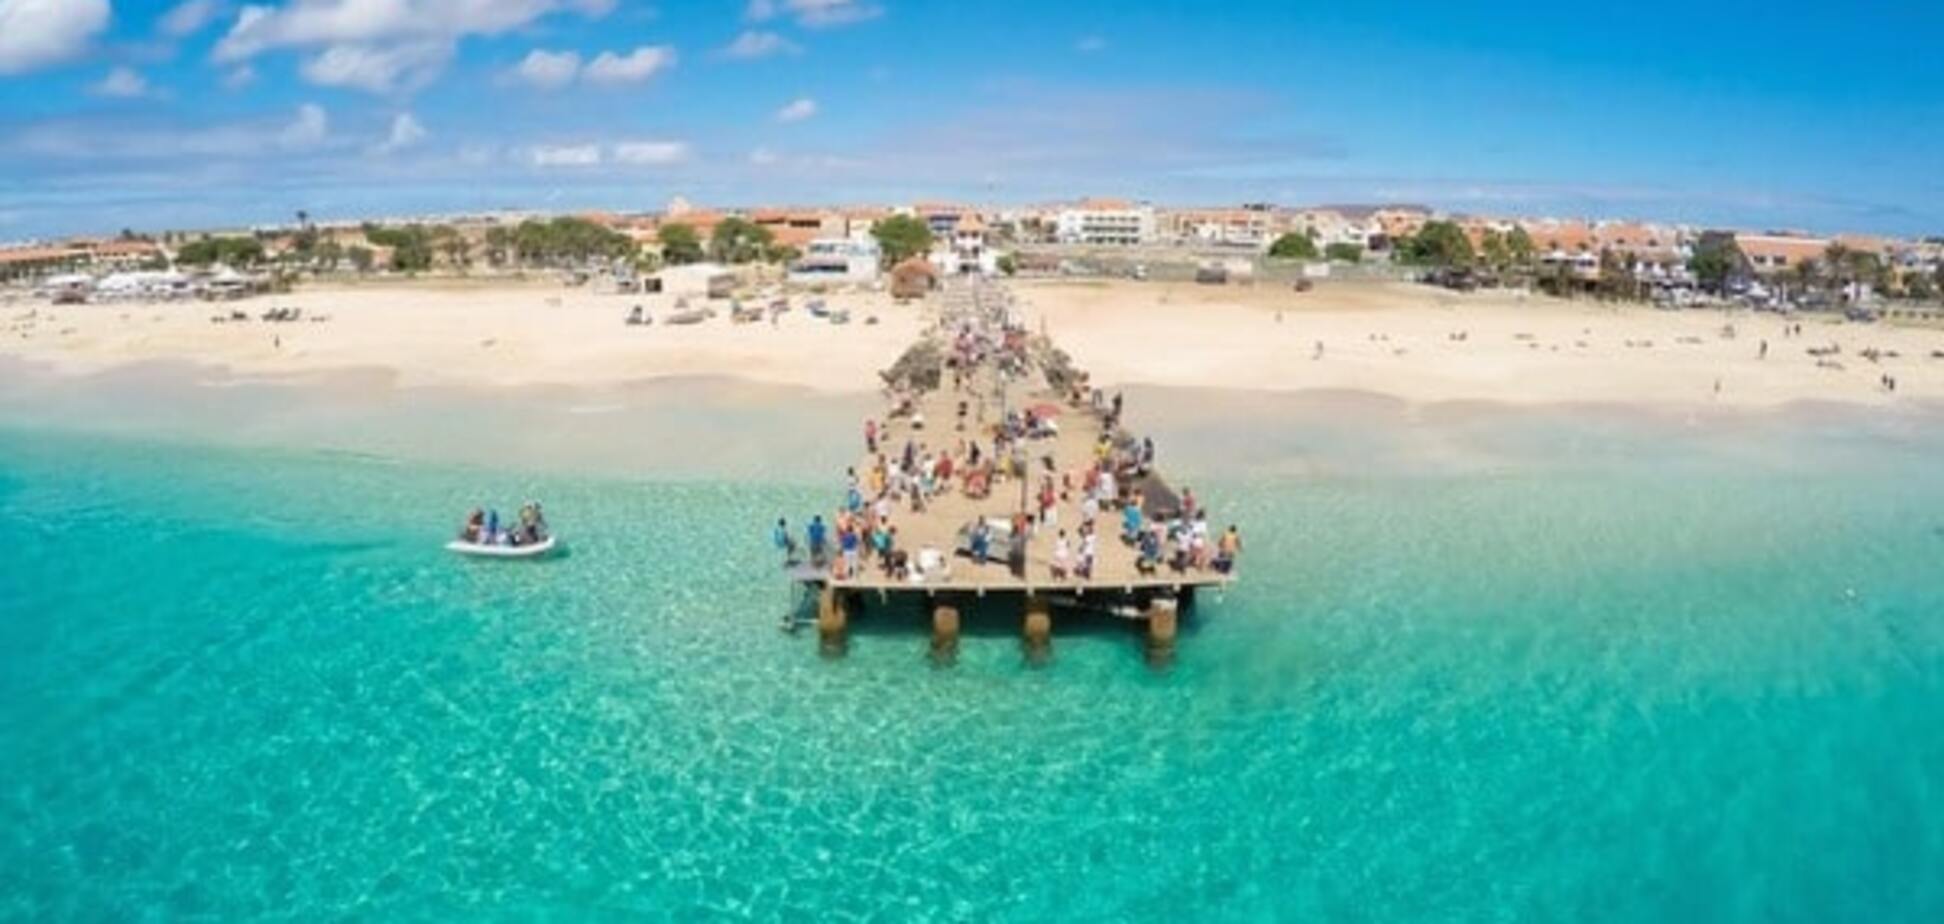 Найкращі пляжі світу: опублікована фотодобірка найпривабливіших місць для відпочинку 